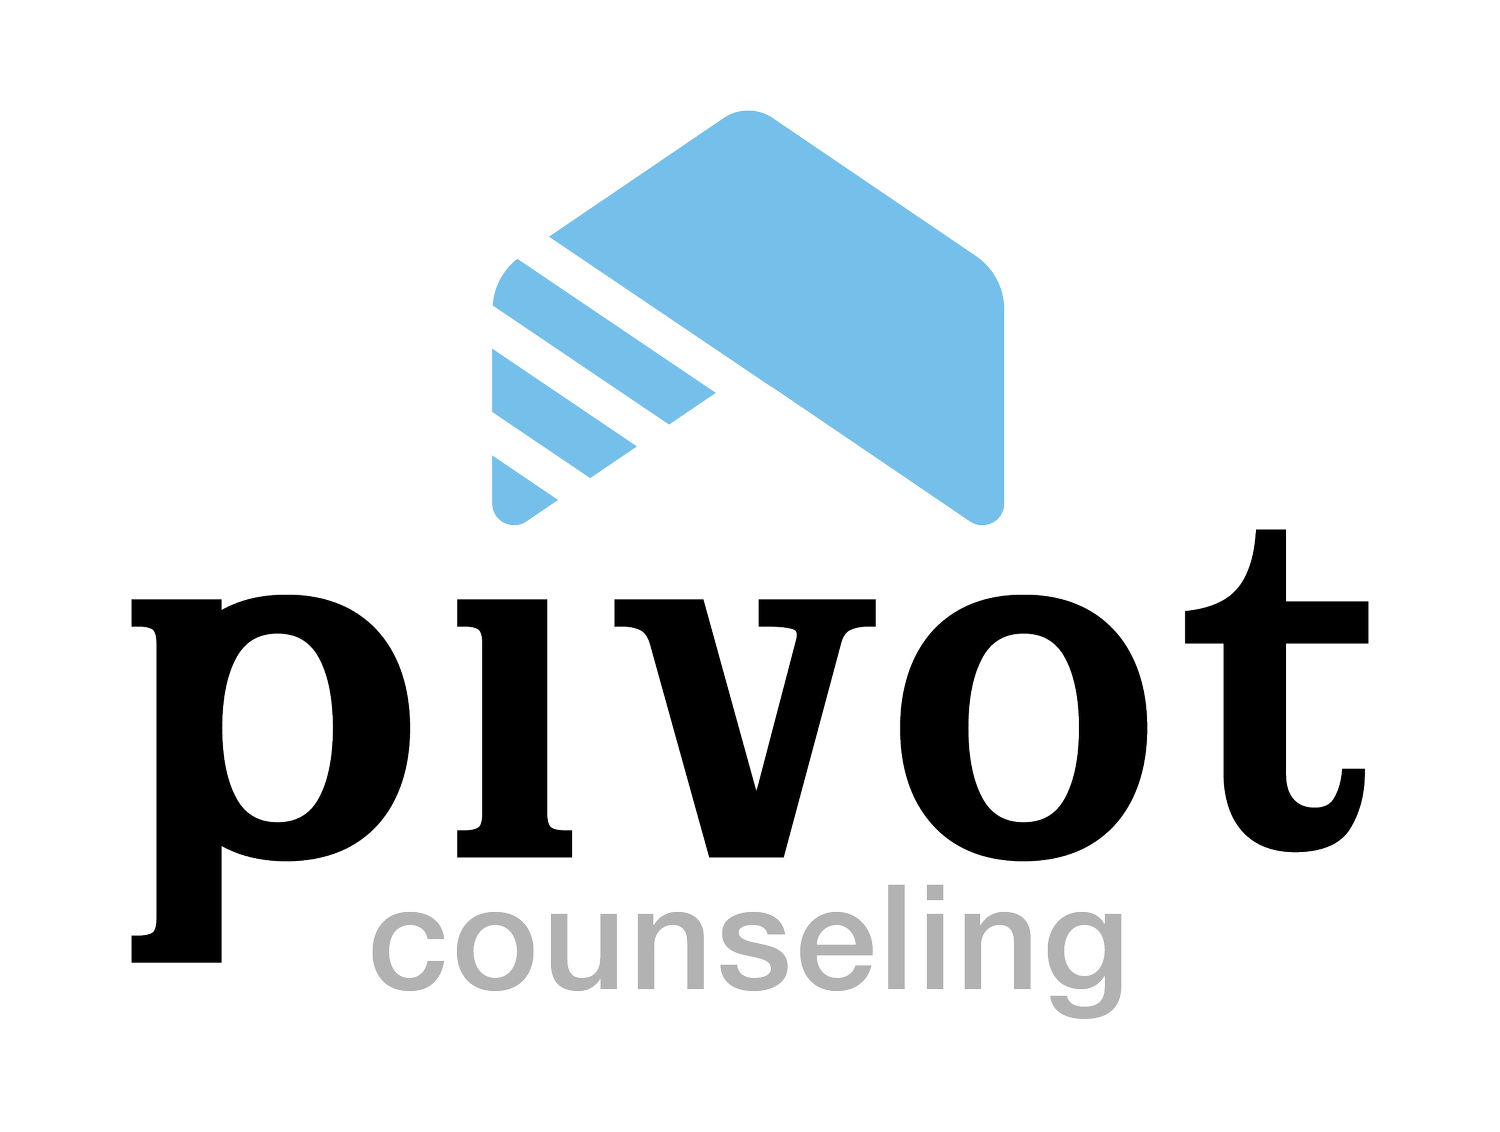 Pivot Counseling